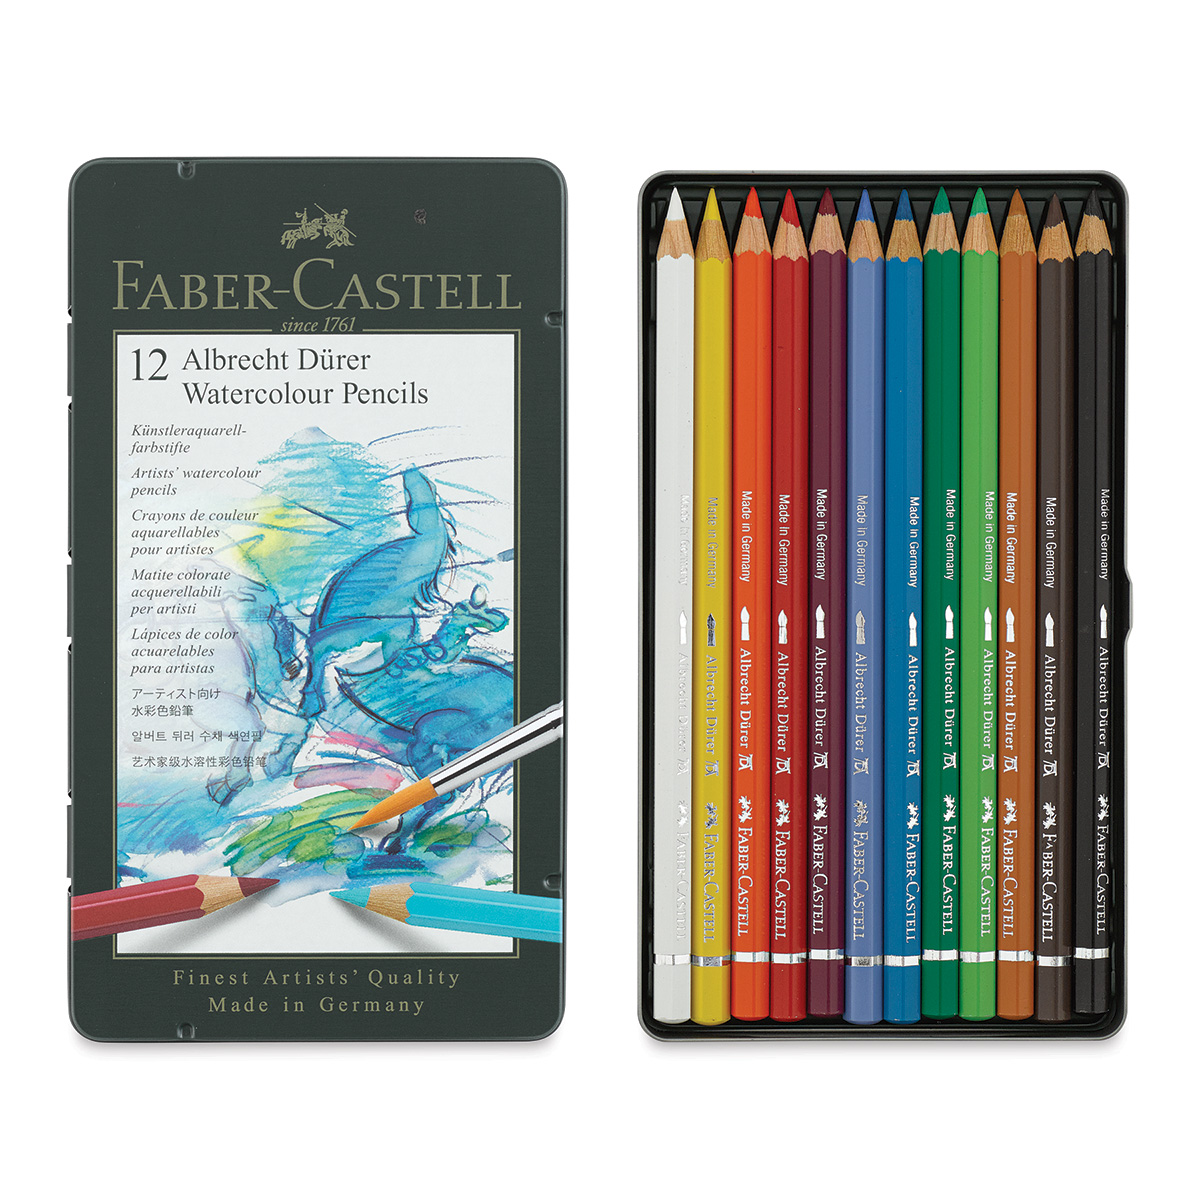 Faber-Castell Albrecht Durer Artist Watercolor Pencils, Set of 12 